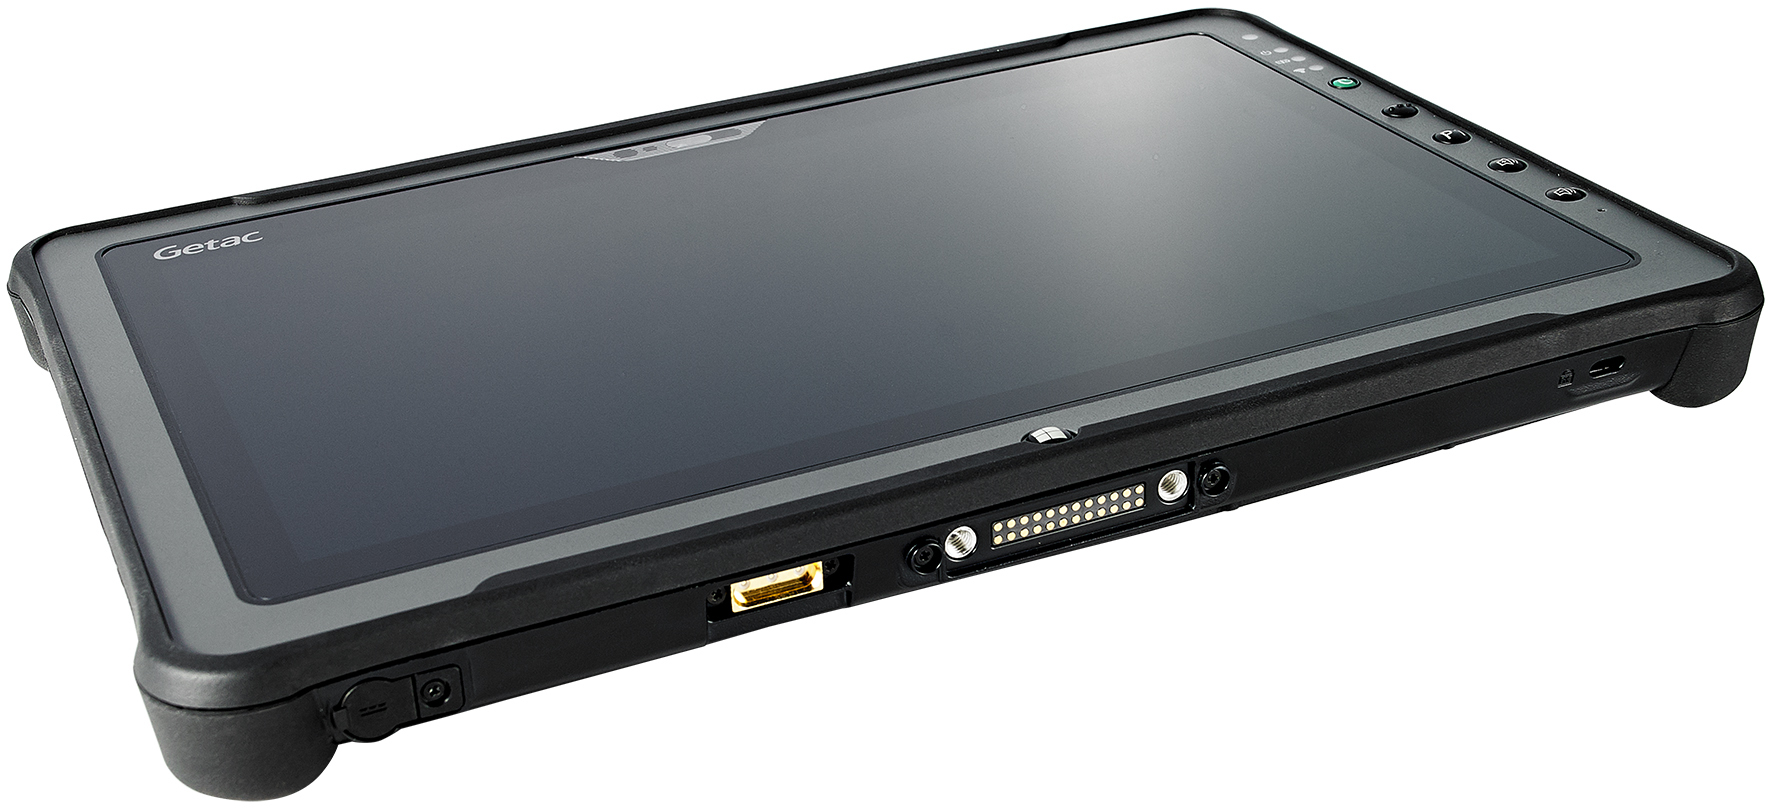 Getac F110 G5 i5 8/256 GB Tablet